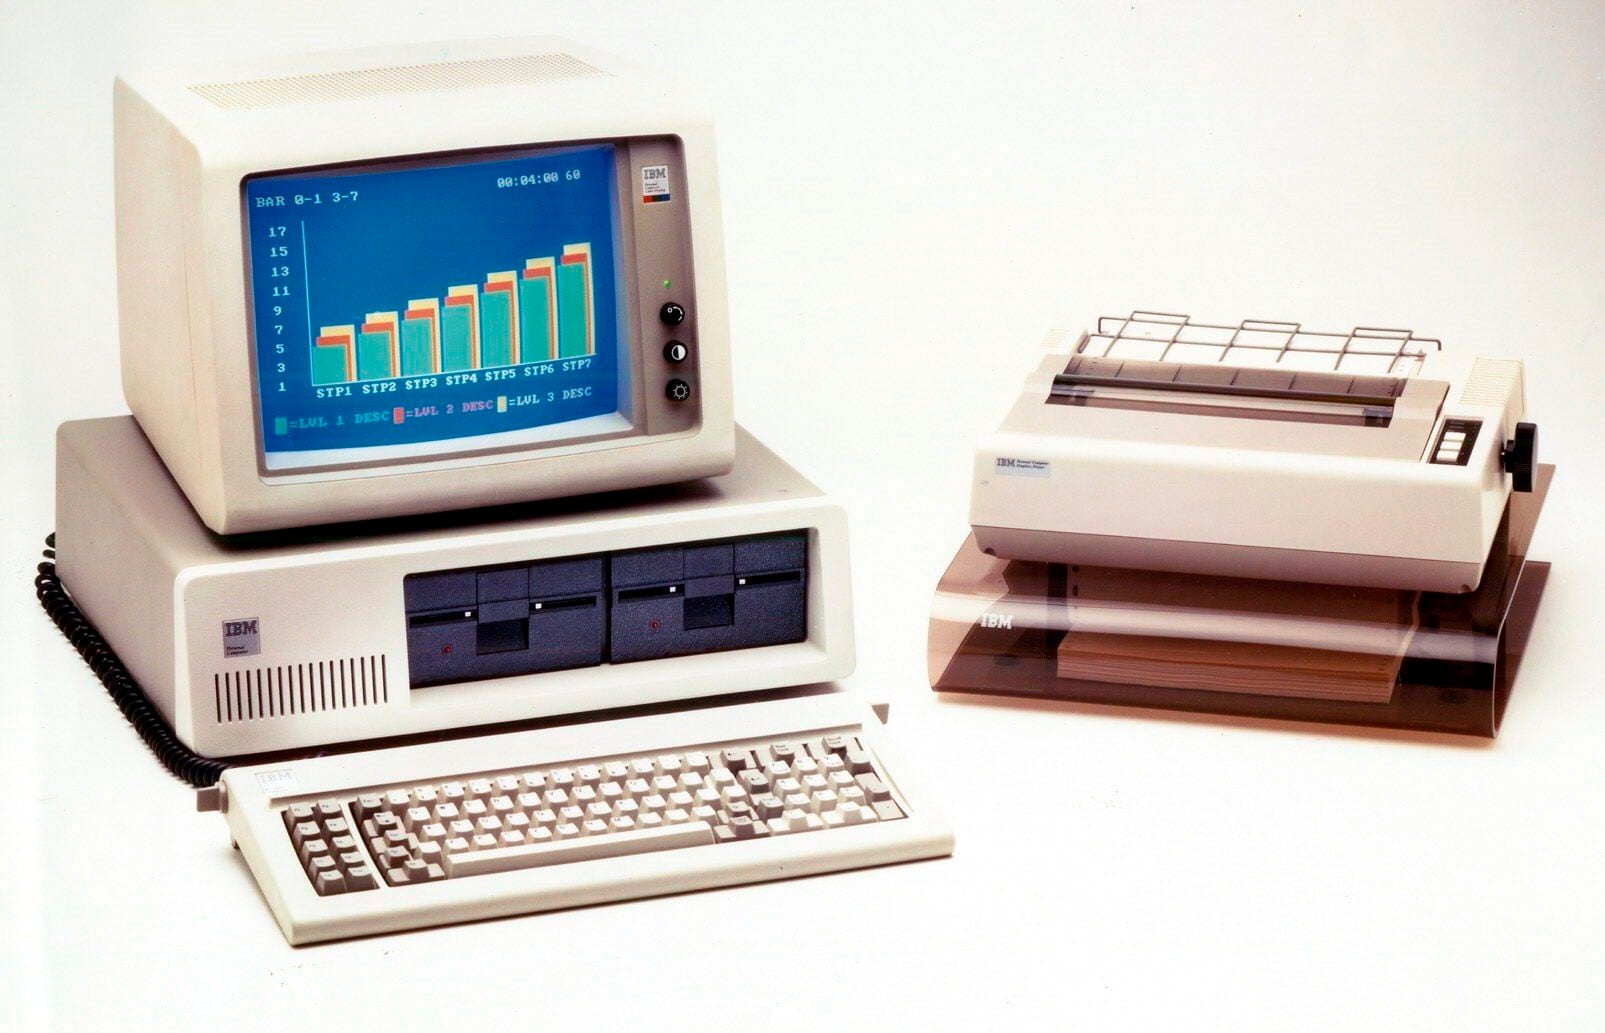 EL computador de IBM modelo 5150 estandarizó el uso del color beige. EFE/IBM/HO
